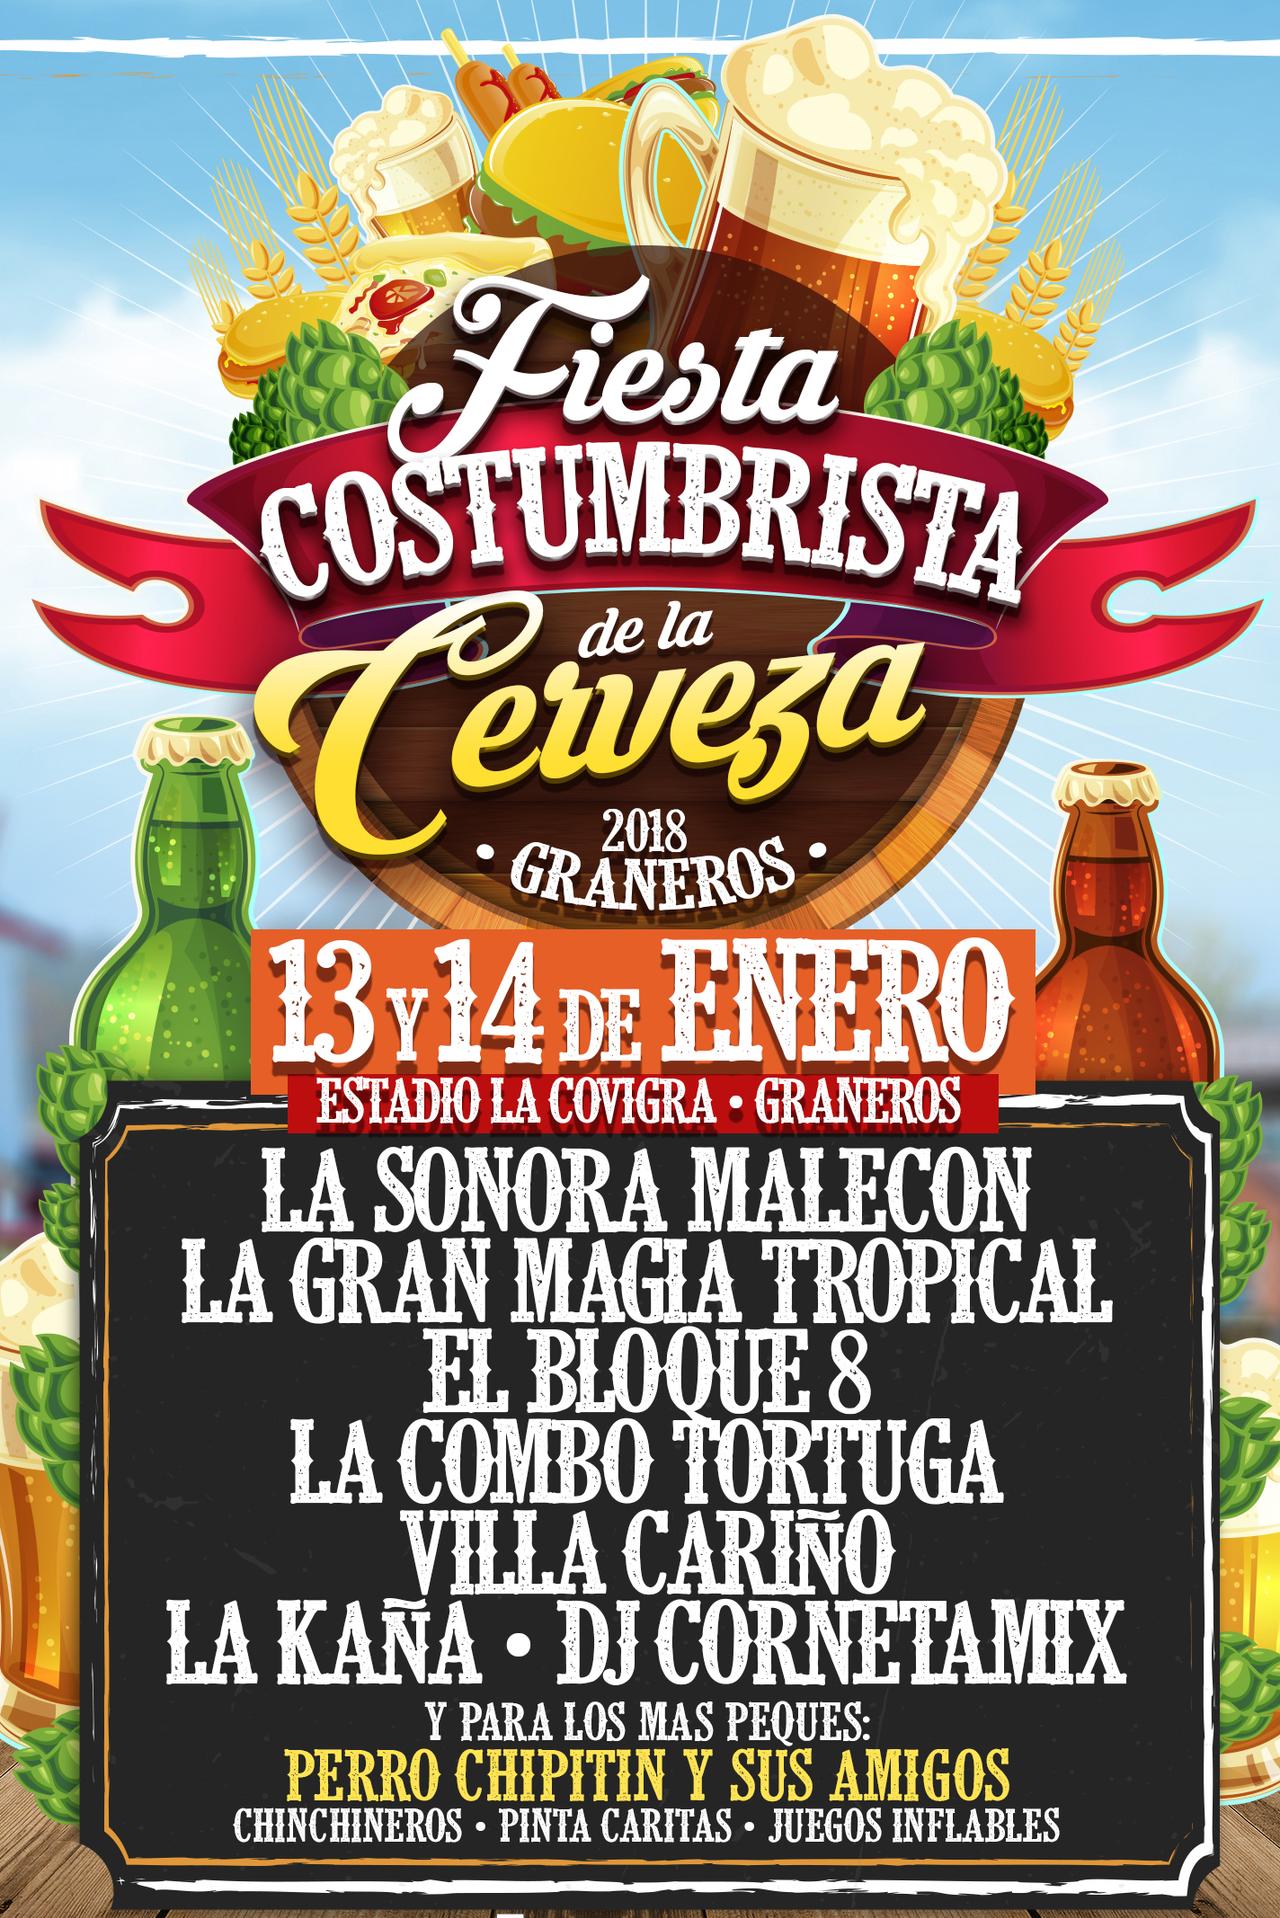 Fiesta Costumbrista de La Cerveza Graneros - Malecón, Bloque 8 y más